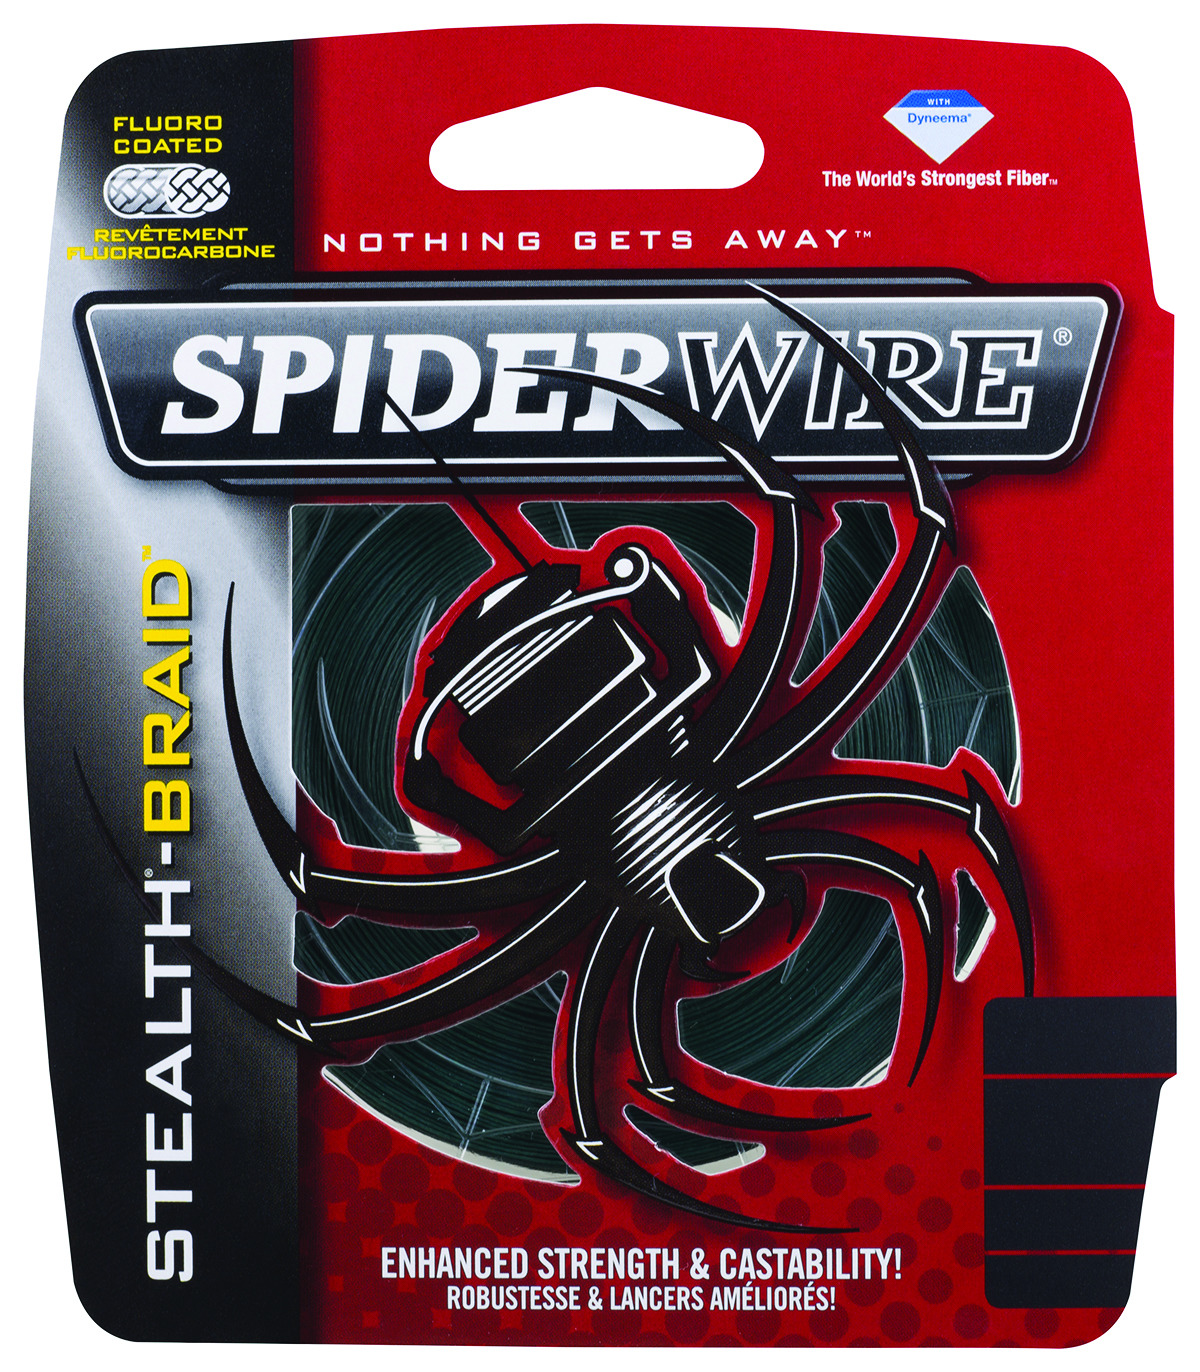 Spiderwire Stealth Braided Line